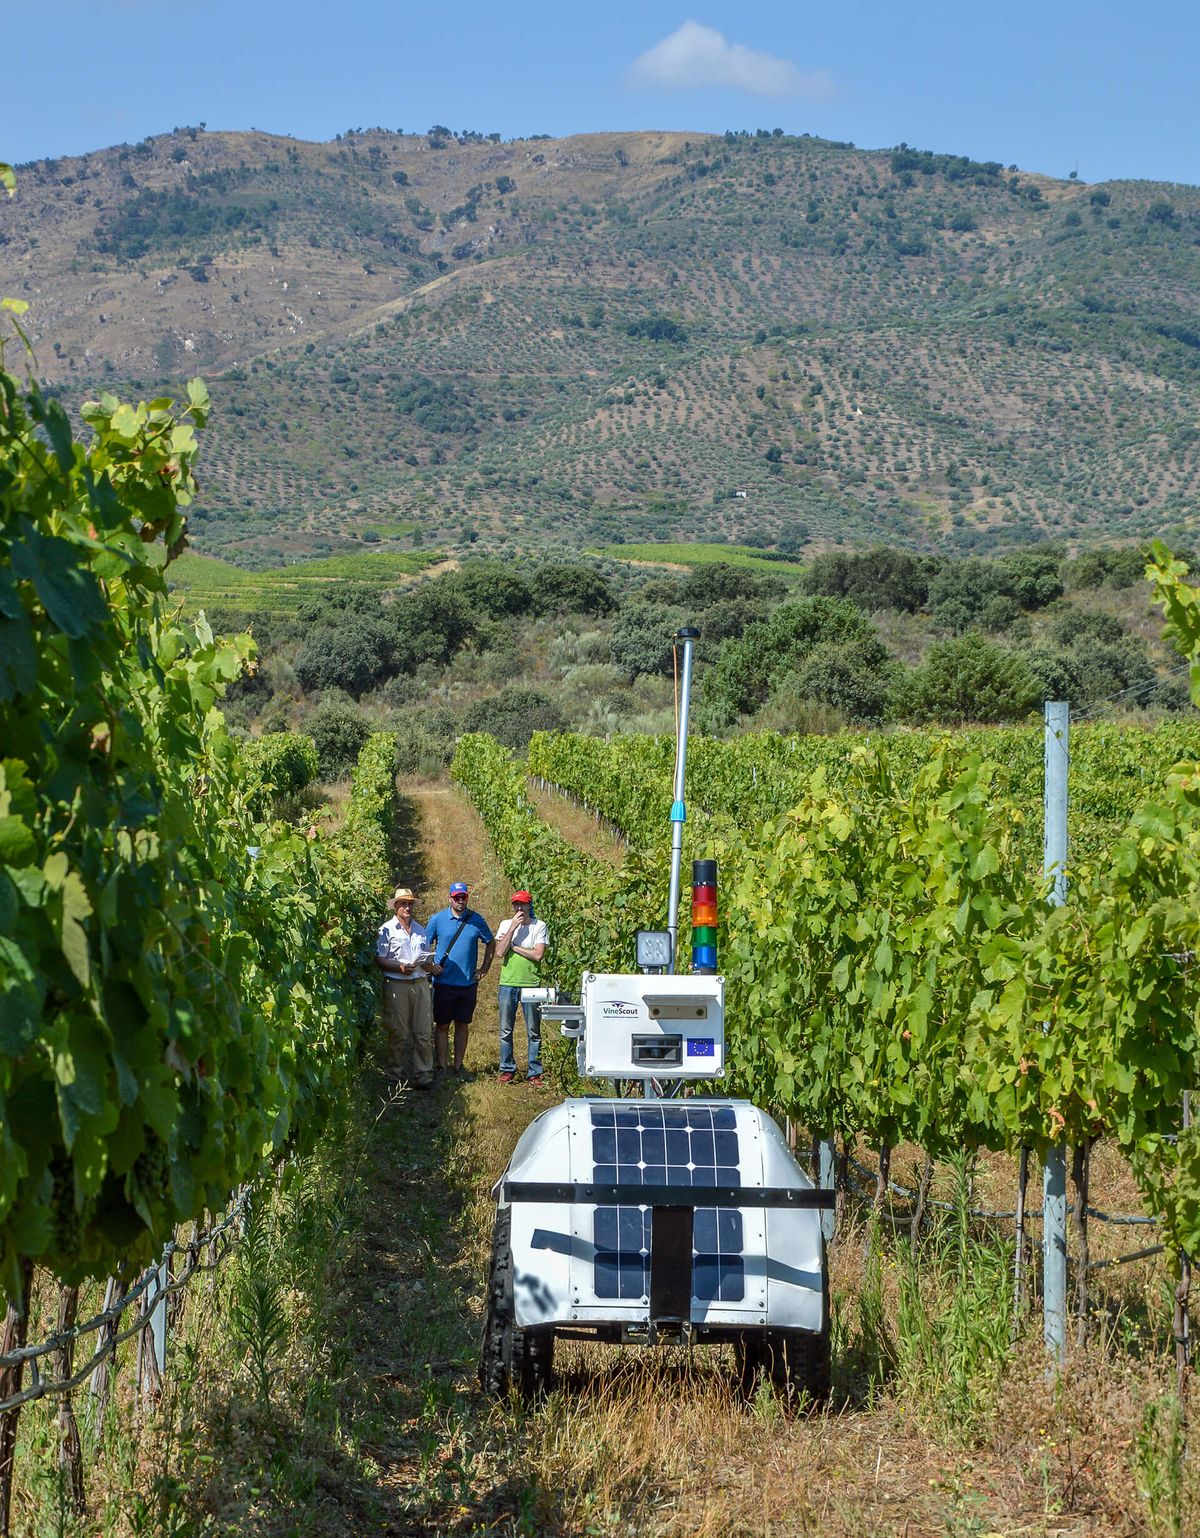 Image verticale du robot entre deux rangées de vignes, montagnes en arrière-plan